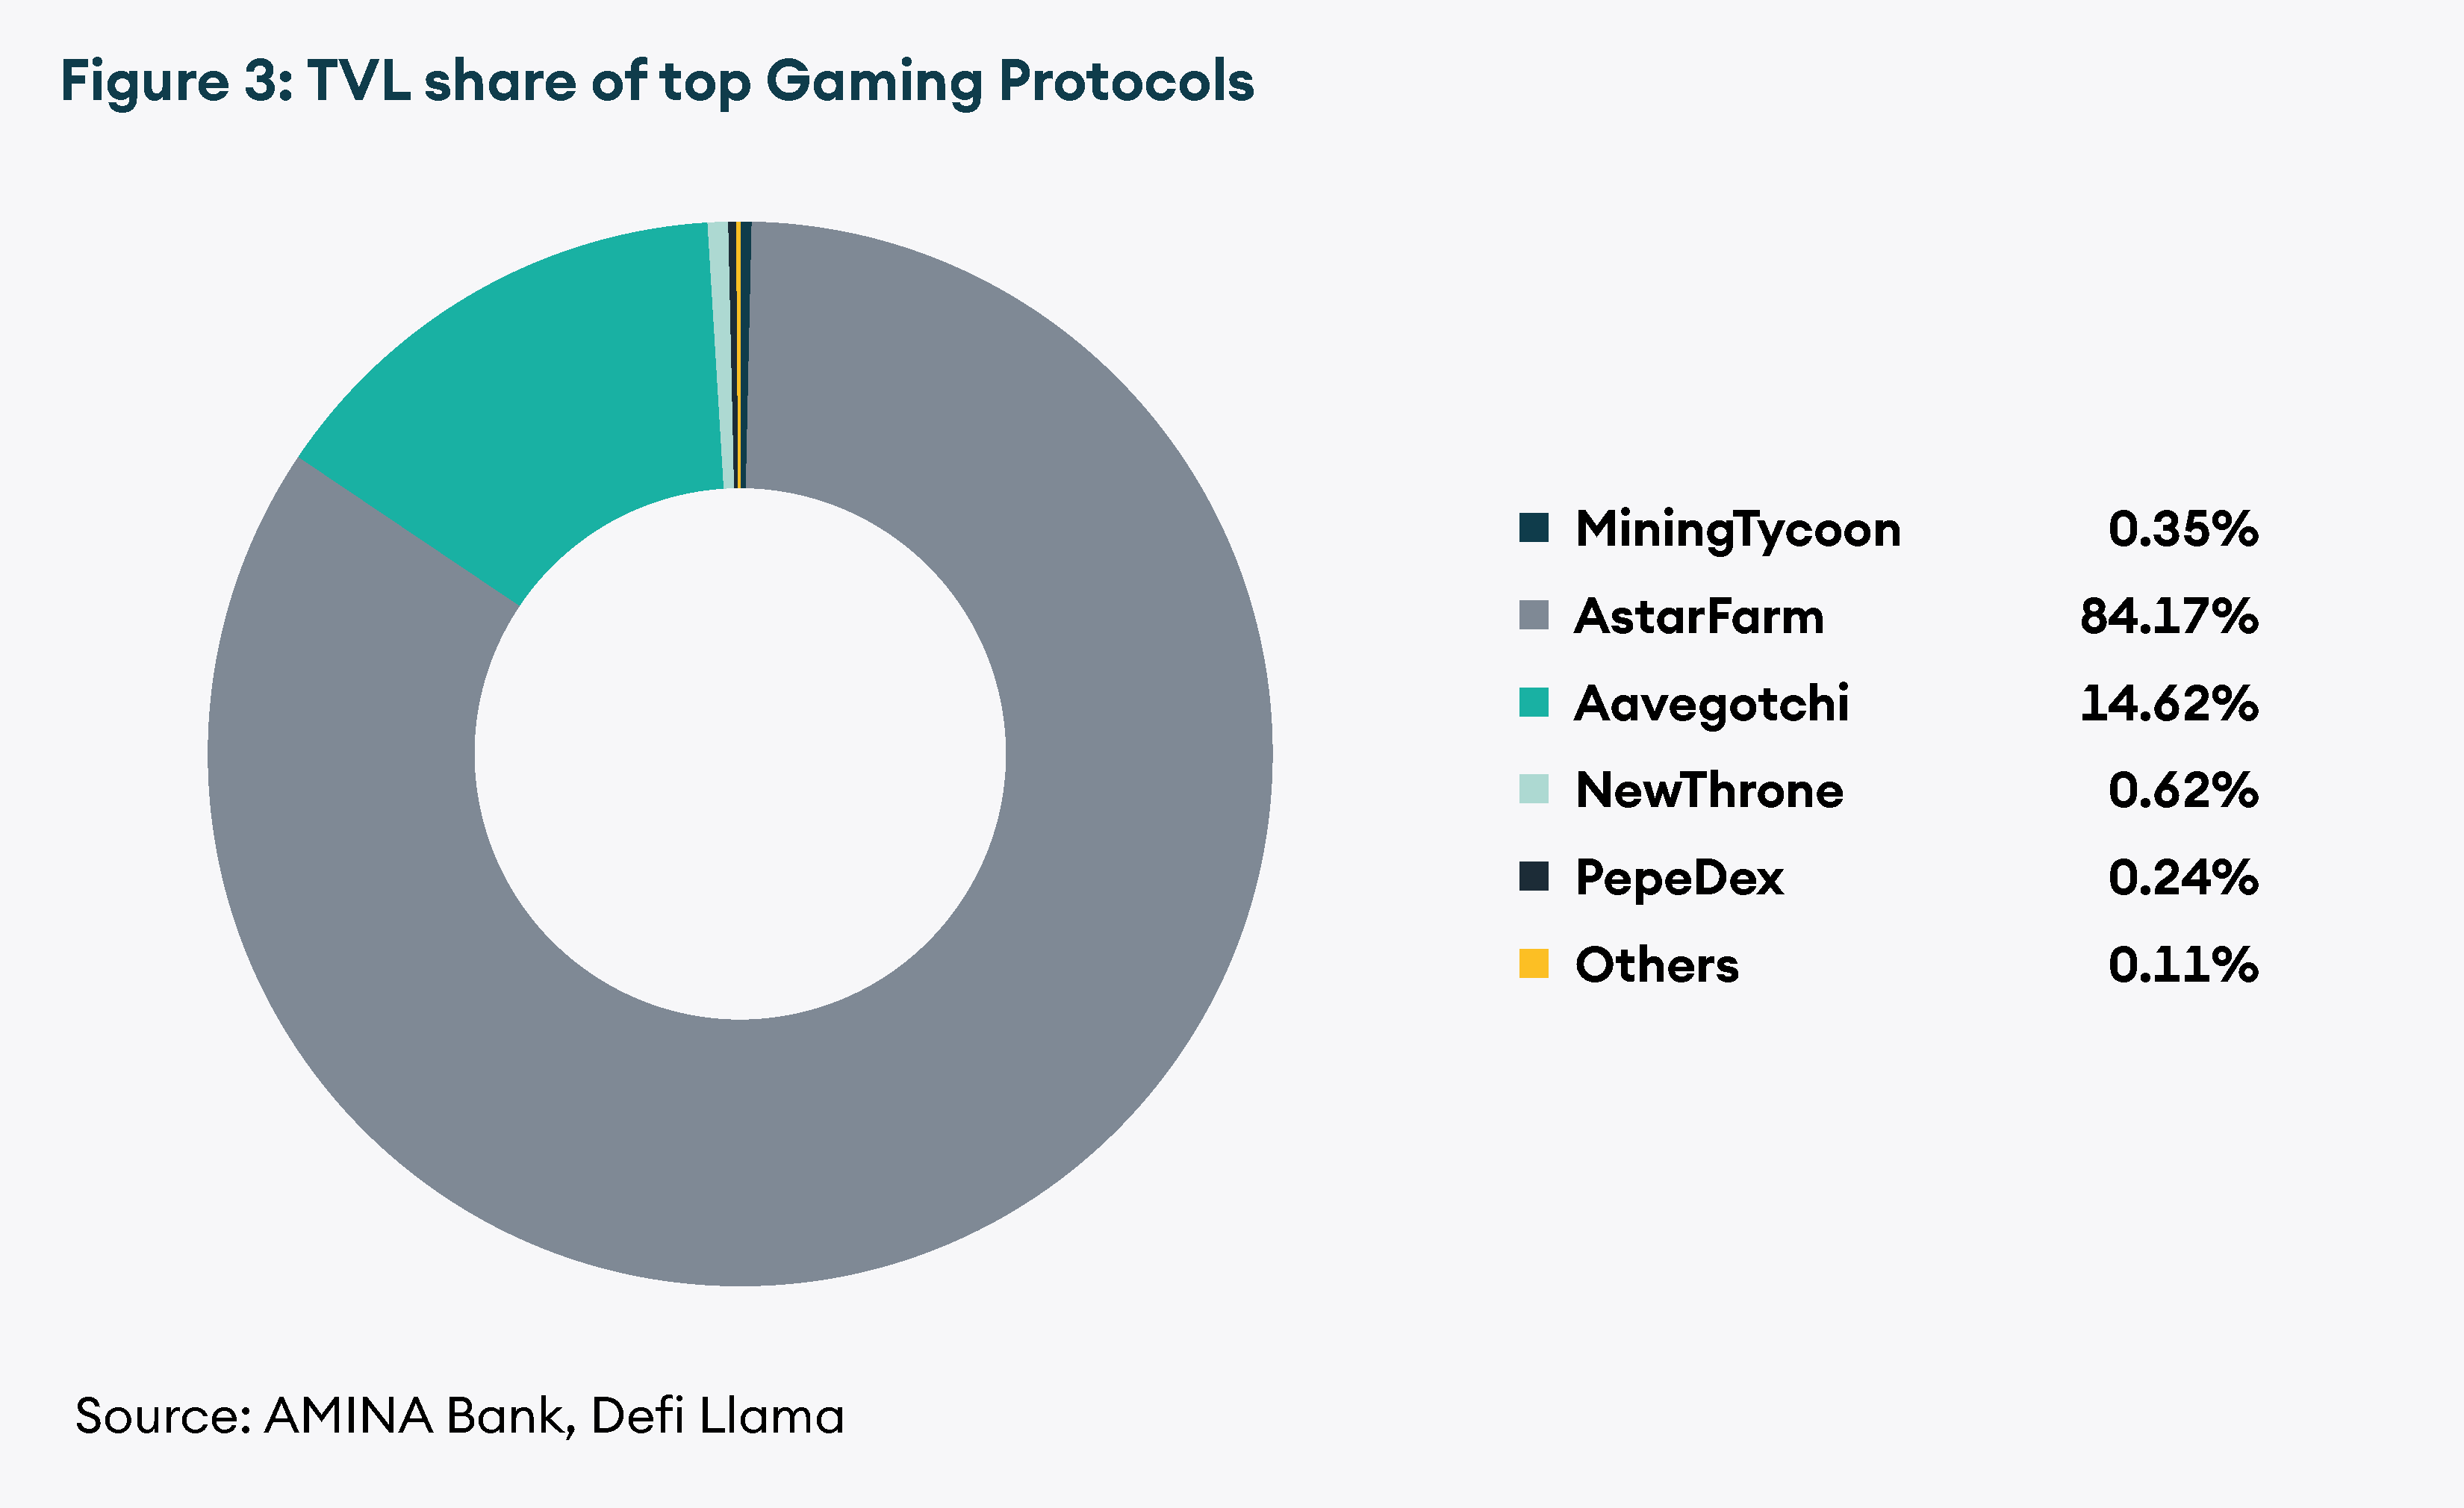 TVL Share of Top Gaming Protocols